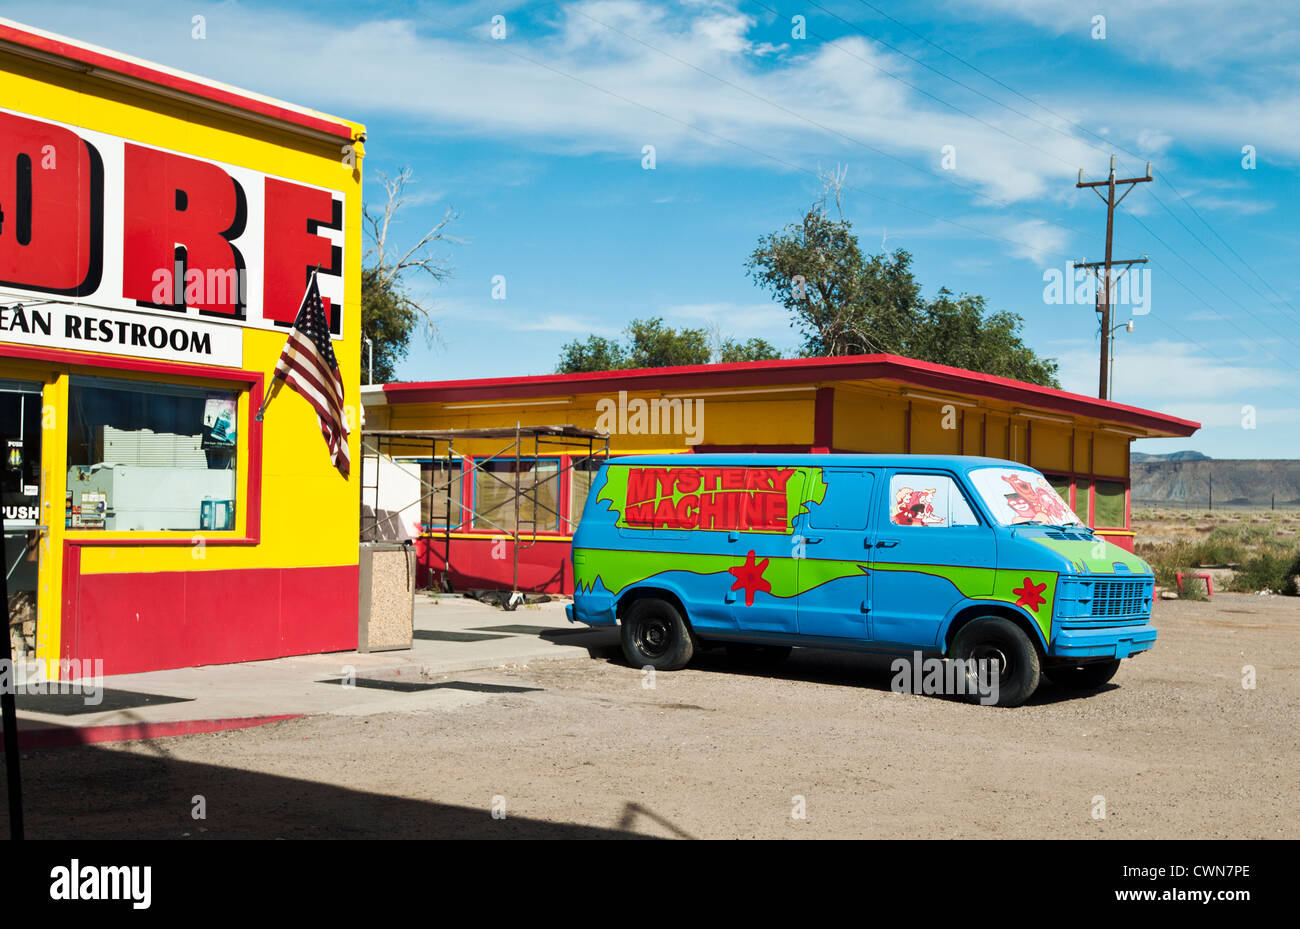 Eine maßgeschneiderte van auszusehen wie die Geheimnis-Maschine aus der Zeichentrickserie "Scooby Doo". Stockfoto